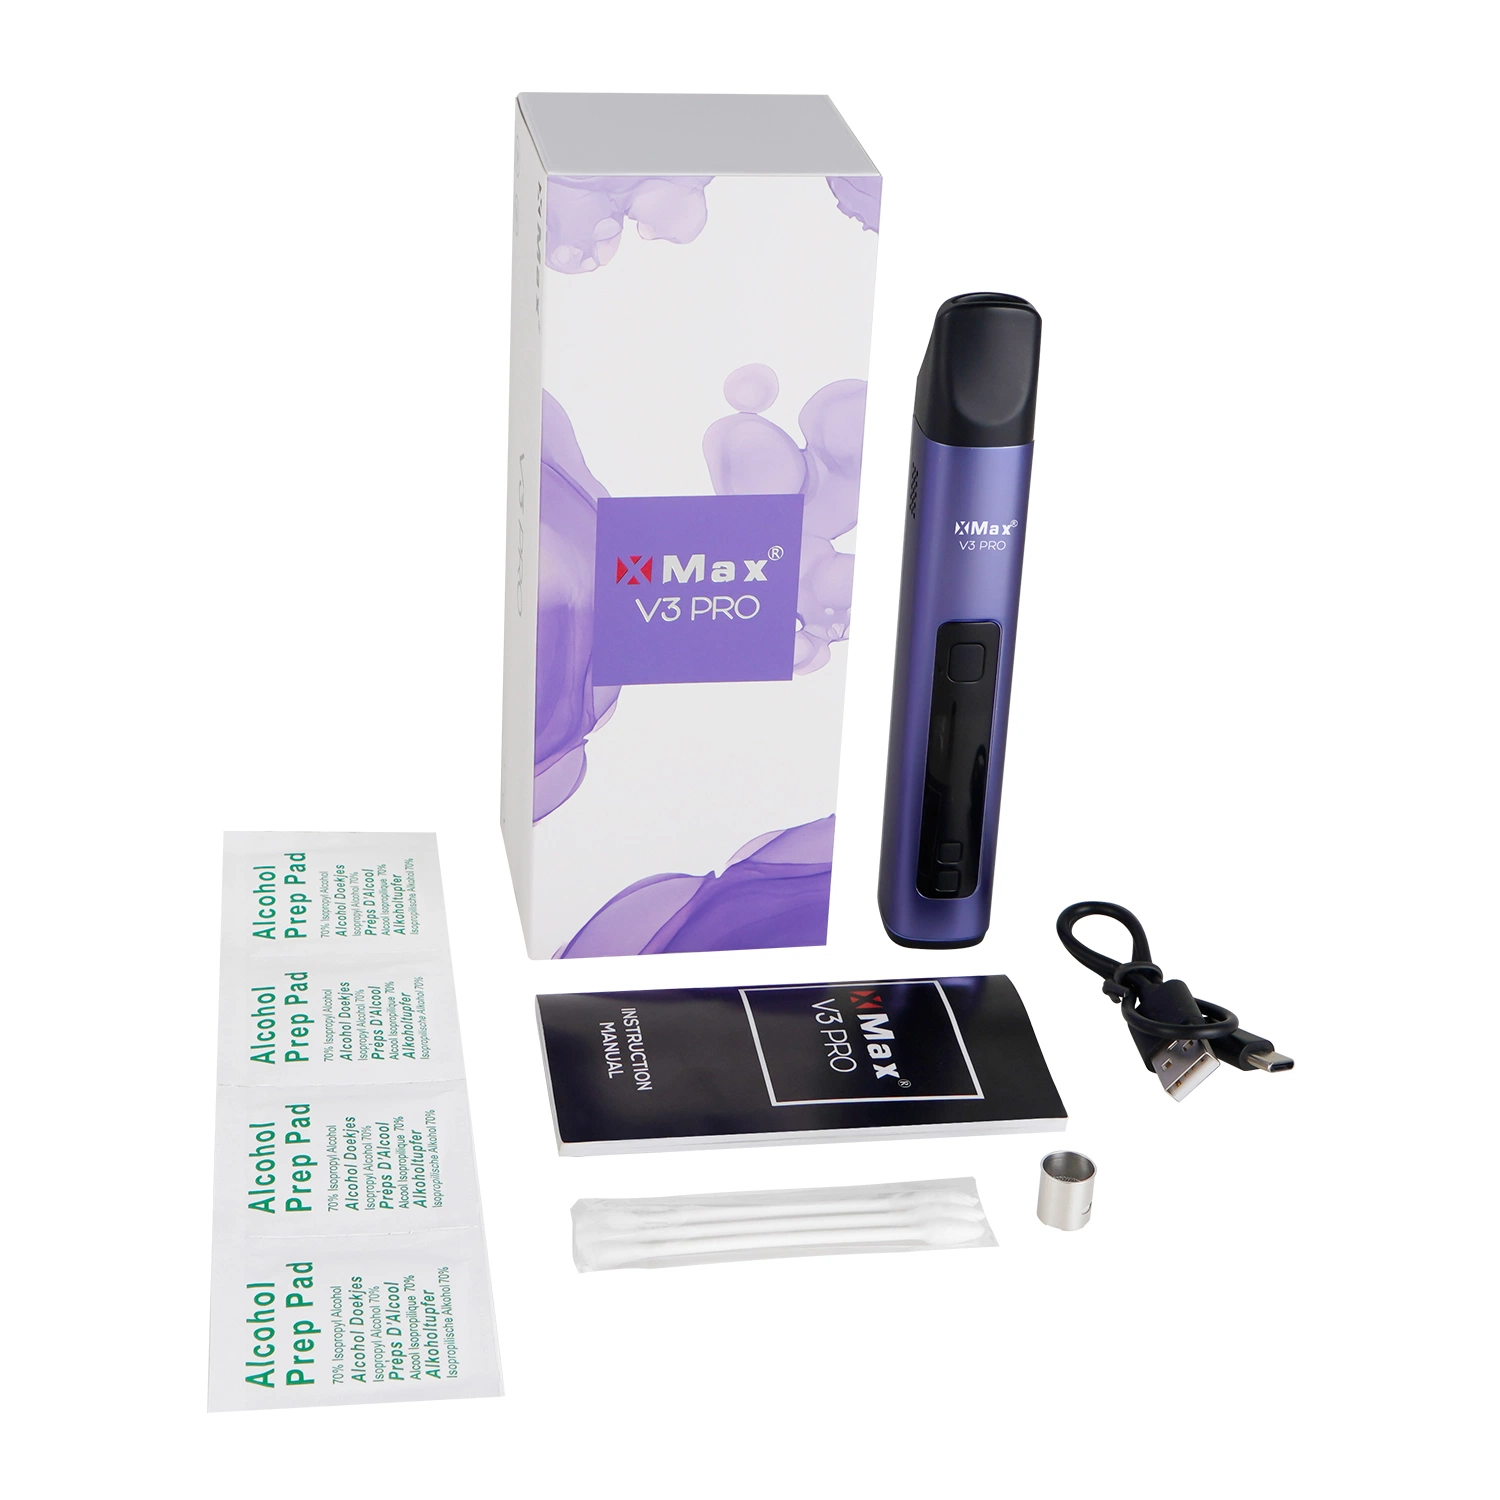 Topgreen New Herb Tasty Convection Technology Vape Pen Smoke Manufacture Kits de iniciação de cigarros eletrónicos XMAX V3 PRO os mais recentes produtos no mercado